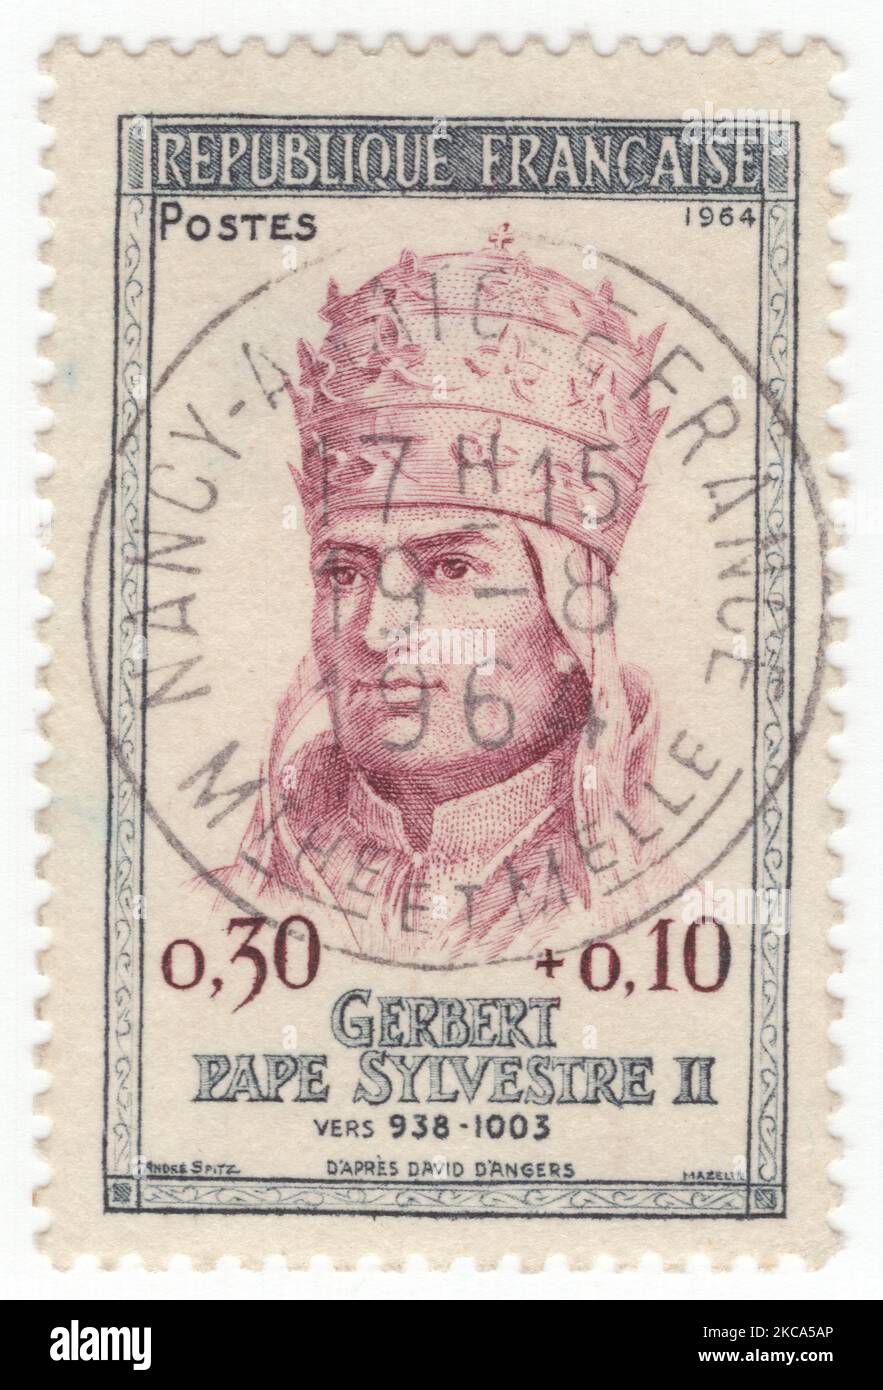 FRANCIA - 1964 giugno 1: Un francobollo semi-postale di ardesia e claret da 30 più 10 centesimi raffigurante il ritratto di Papa Sylvester II (Gerbert). La sovrappressione era per la Croce Rossa Foto Stock